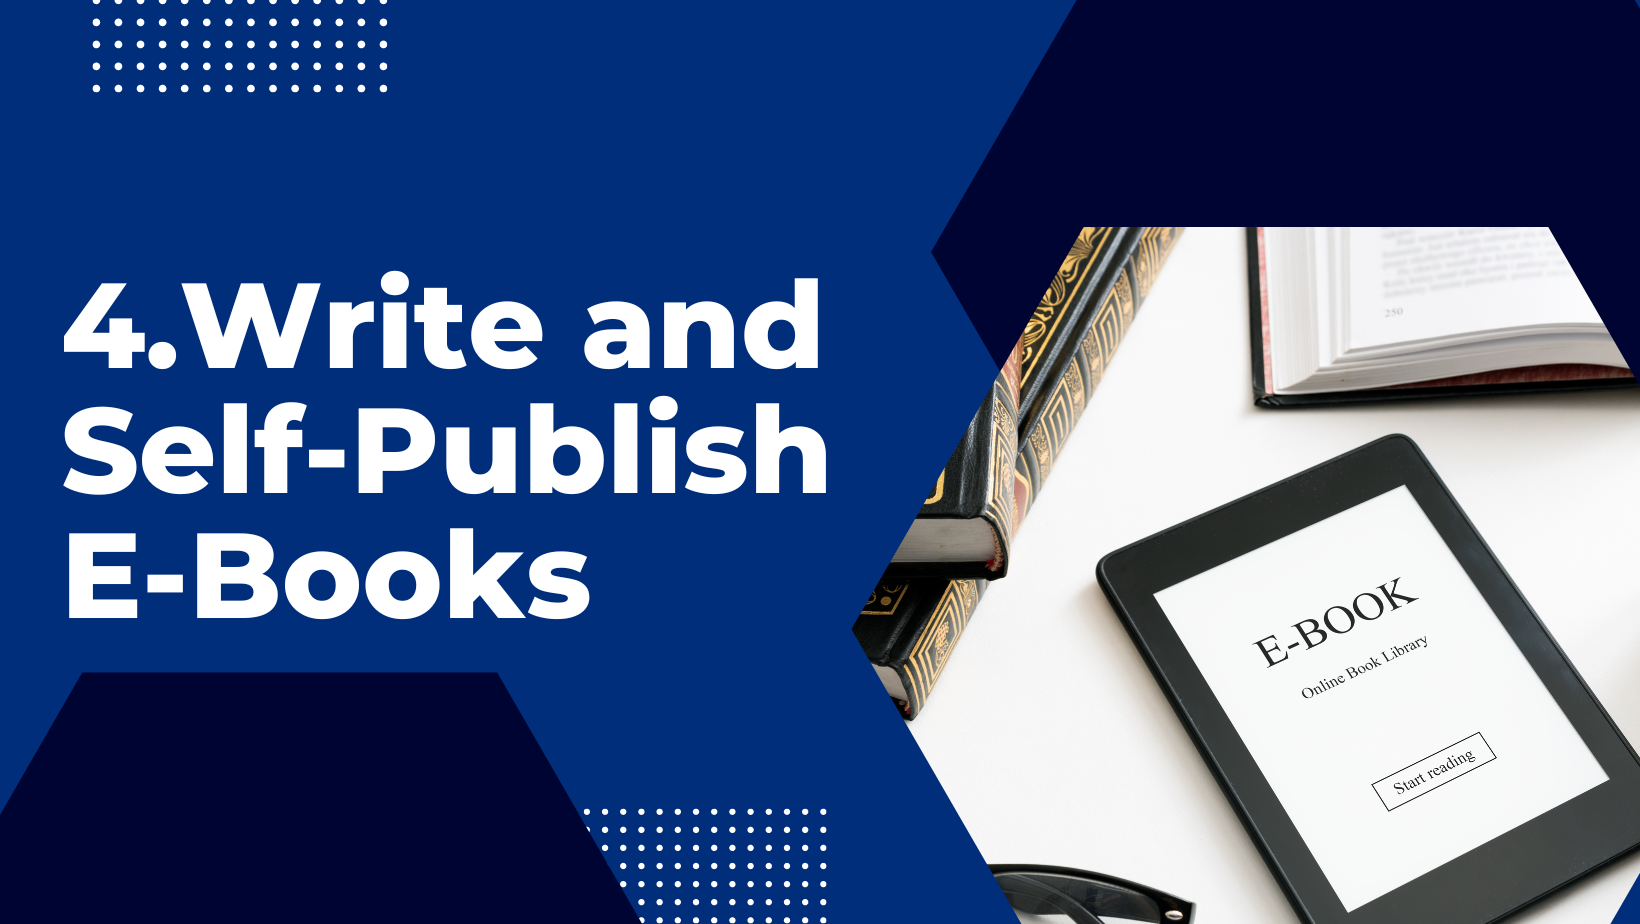 Write and Self-Publish E-Books